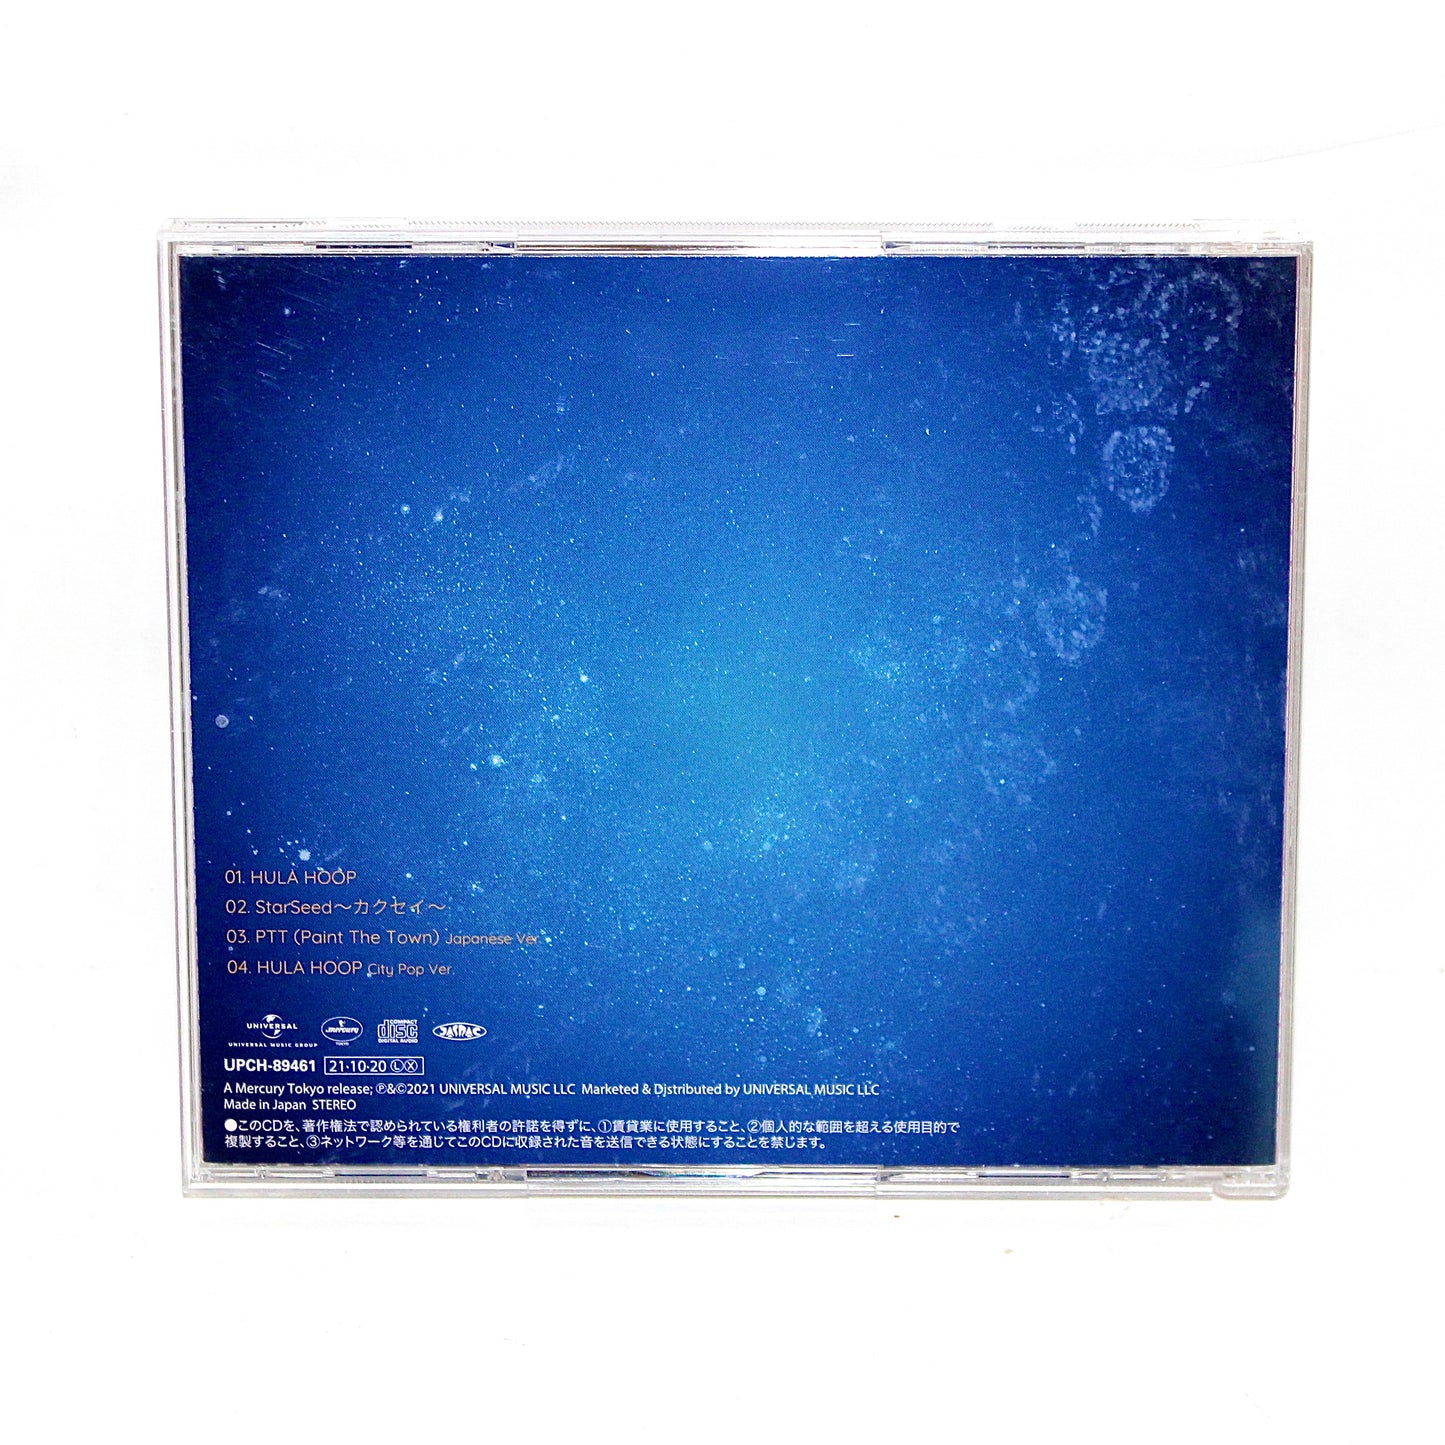 LOONA 1st Japanese Single Album: Hula Hoop／Starseed ~カクセイ~ (KAKUSEI) | Jewel Case